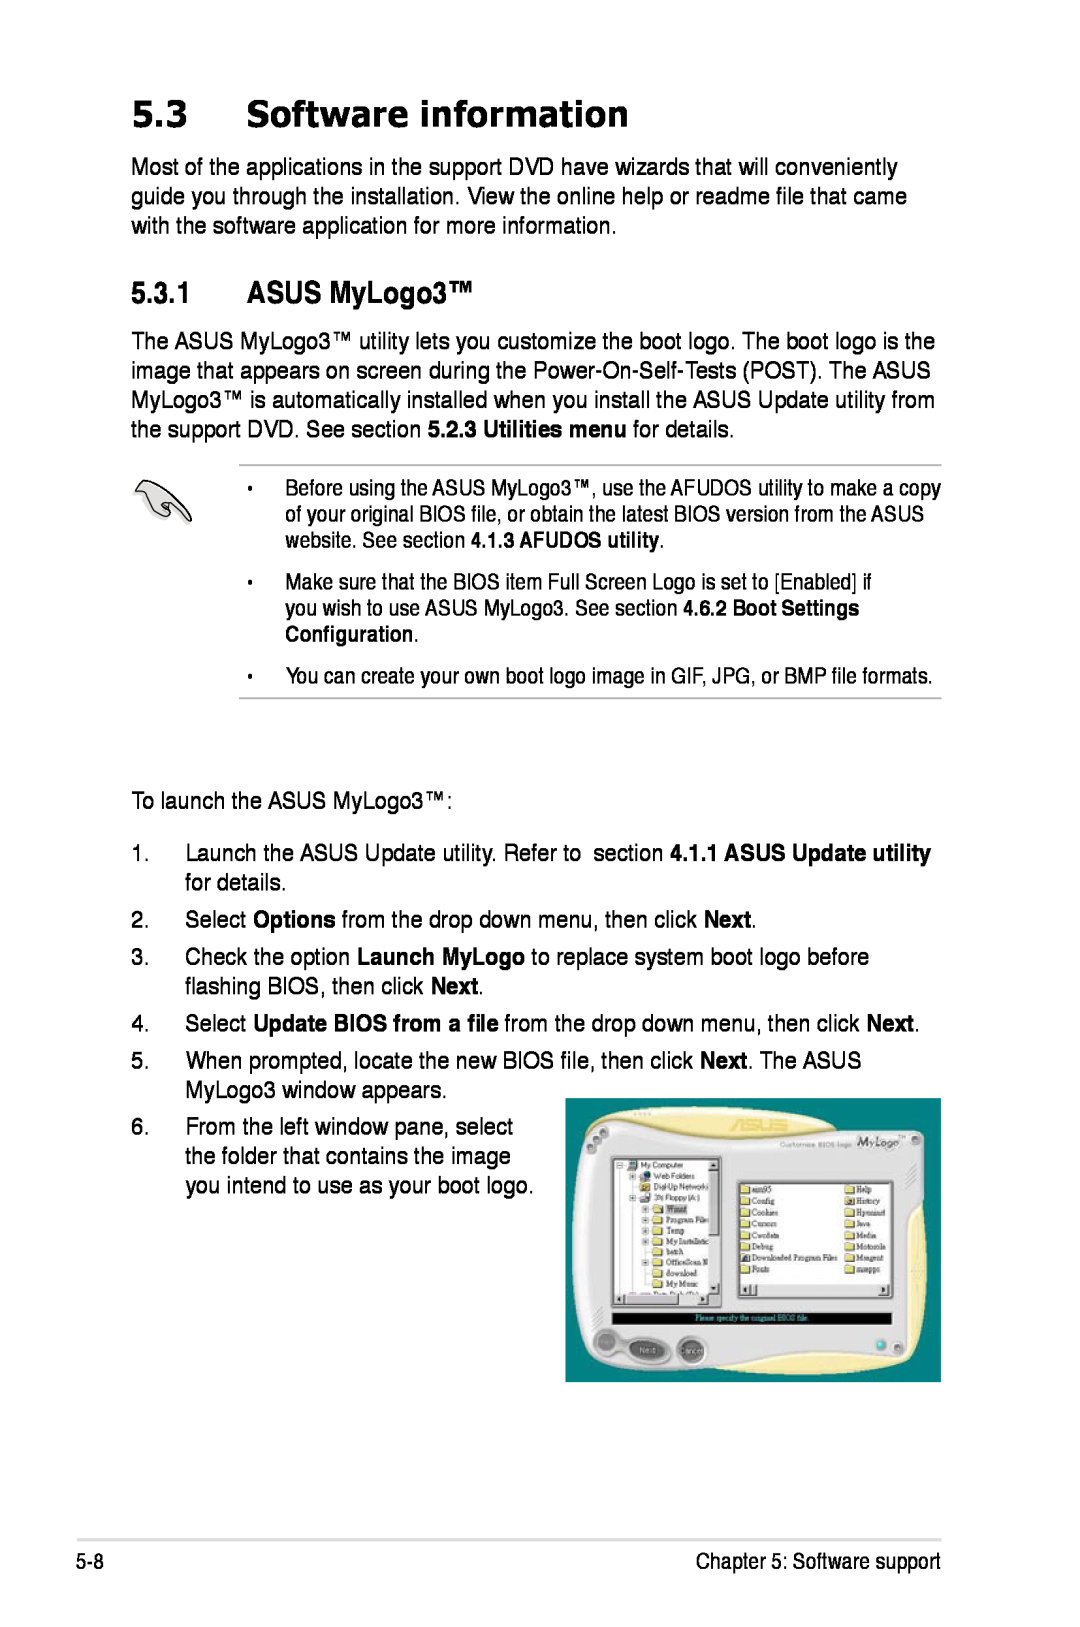 Asus P5K/EPU manual Software information, ASUS MyLogo3 